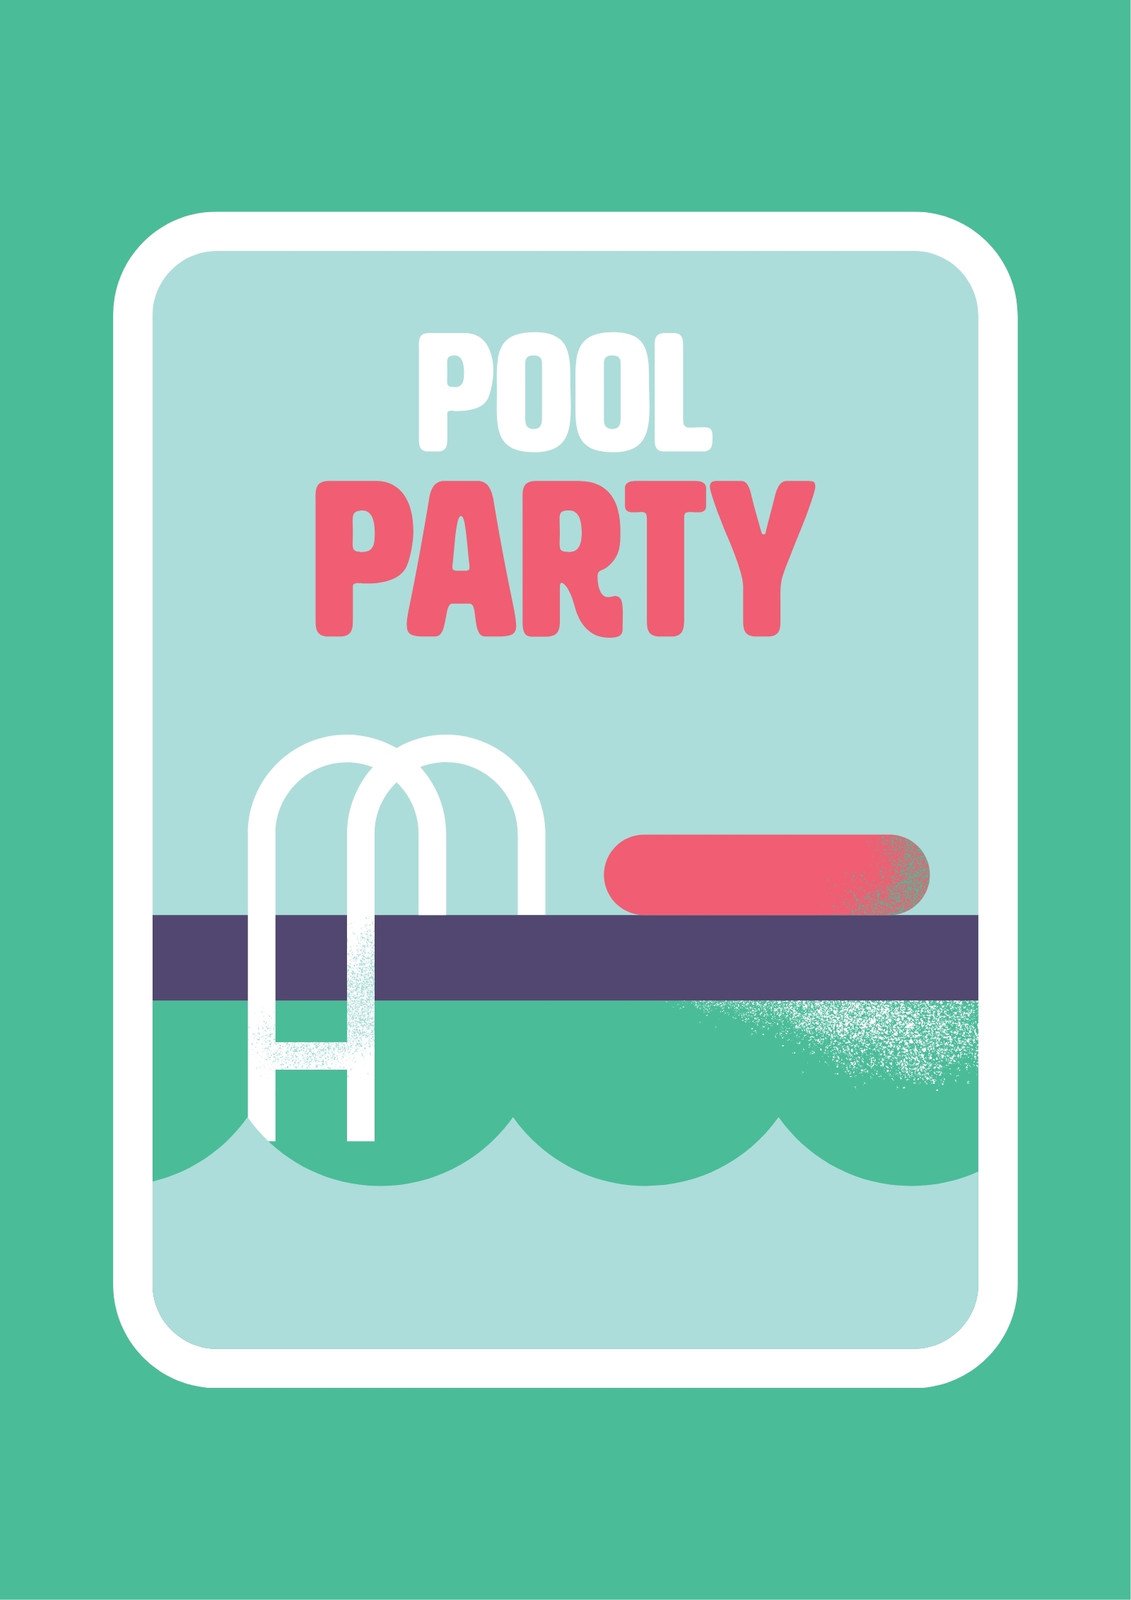 Modelos gratuitos e personalizáveis de pool party - Canva